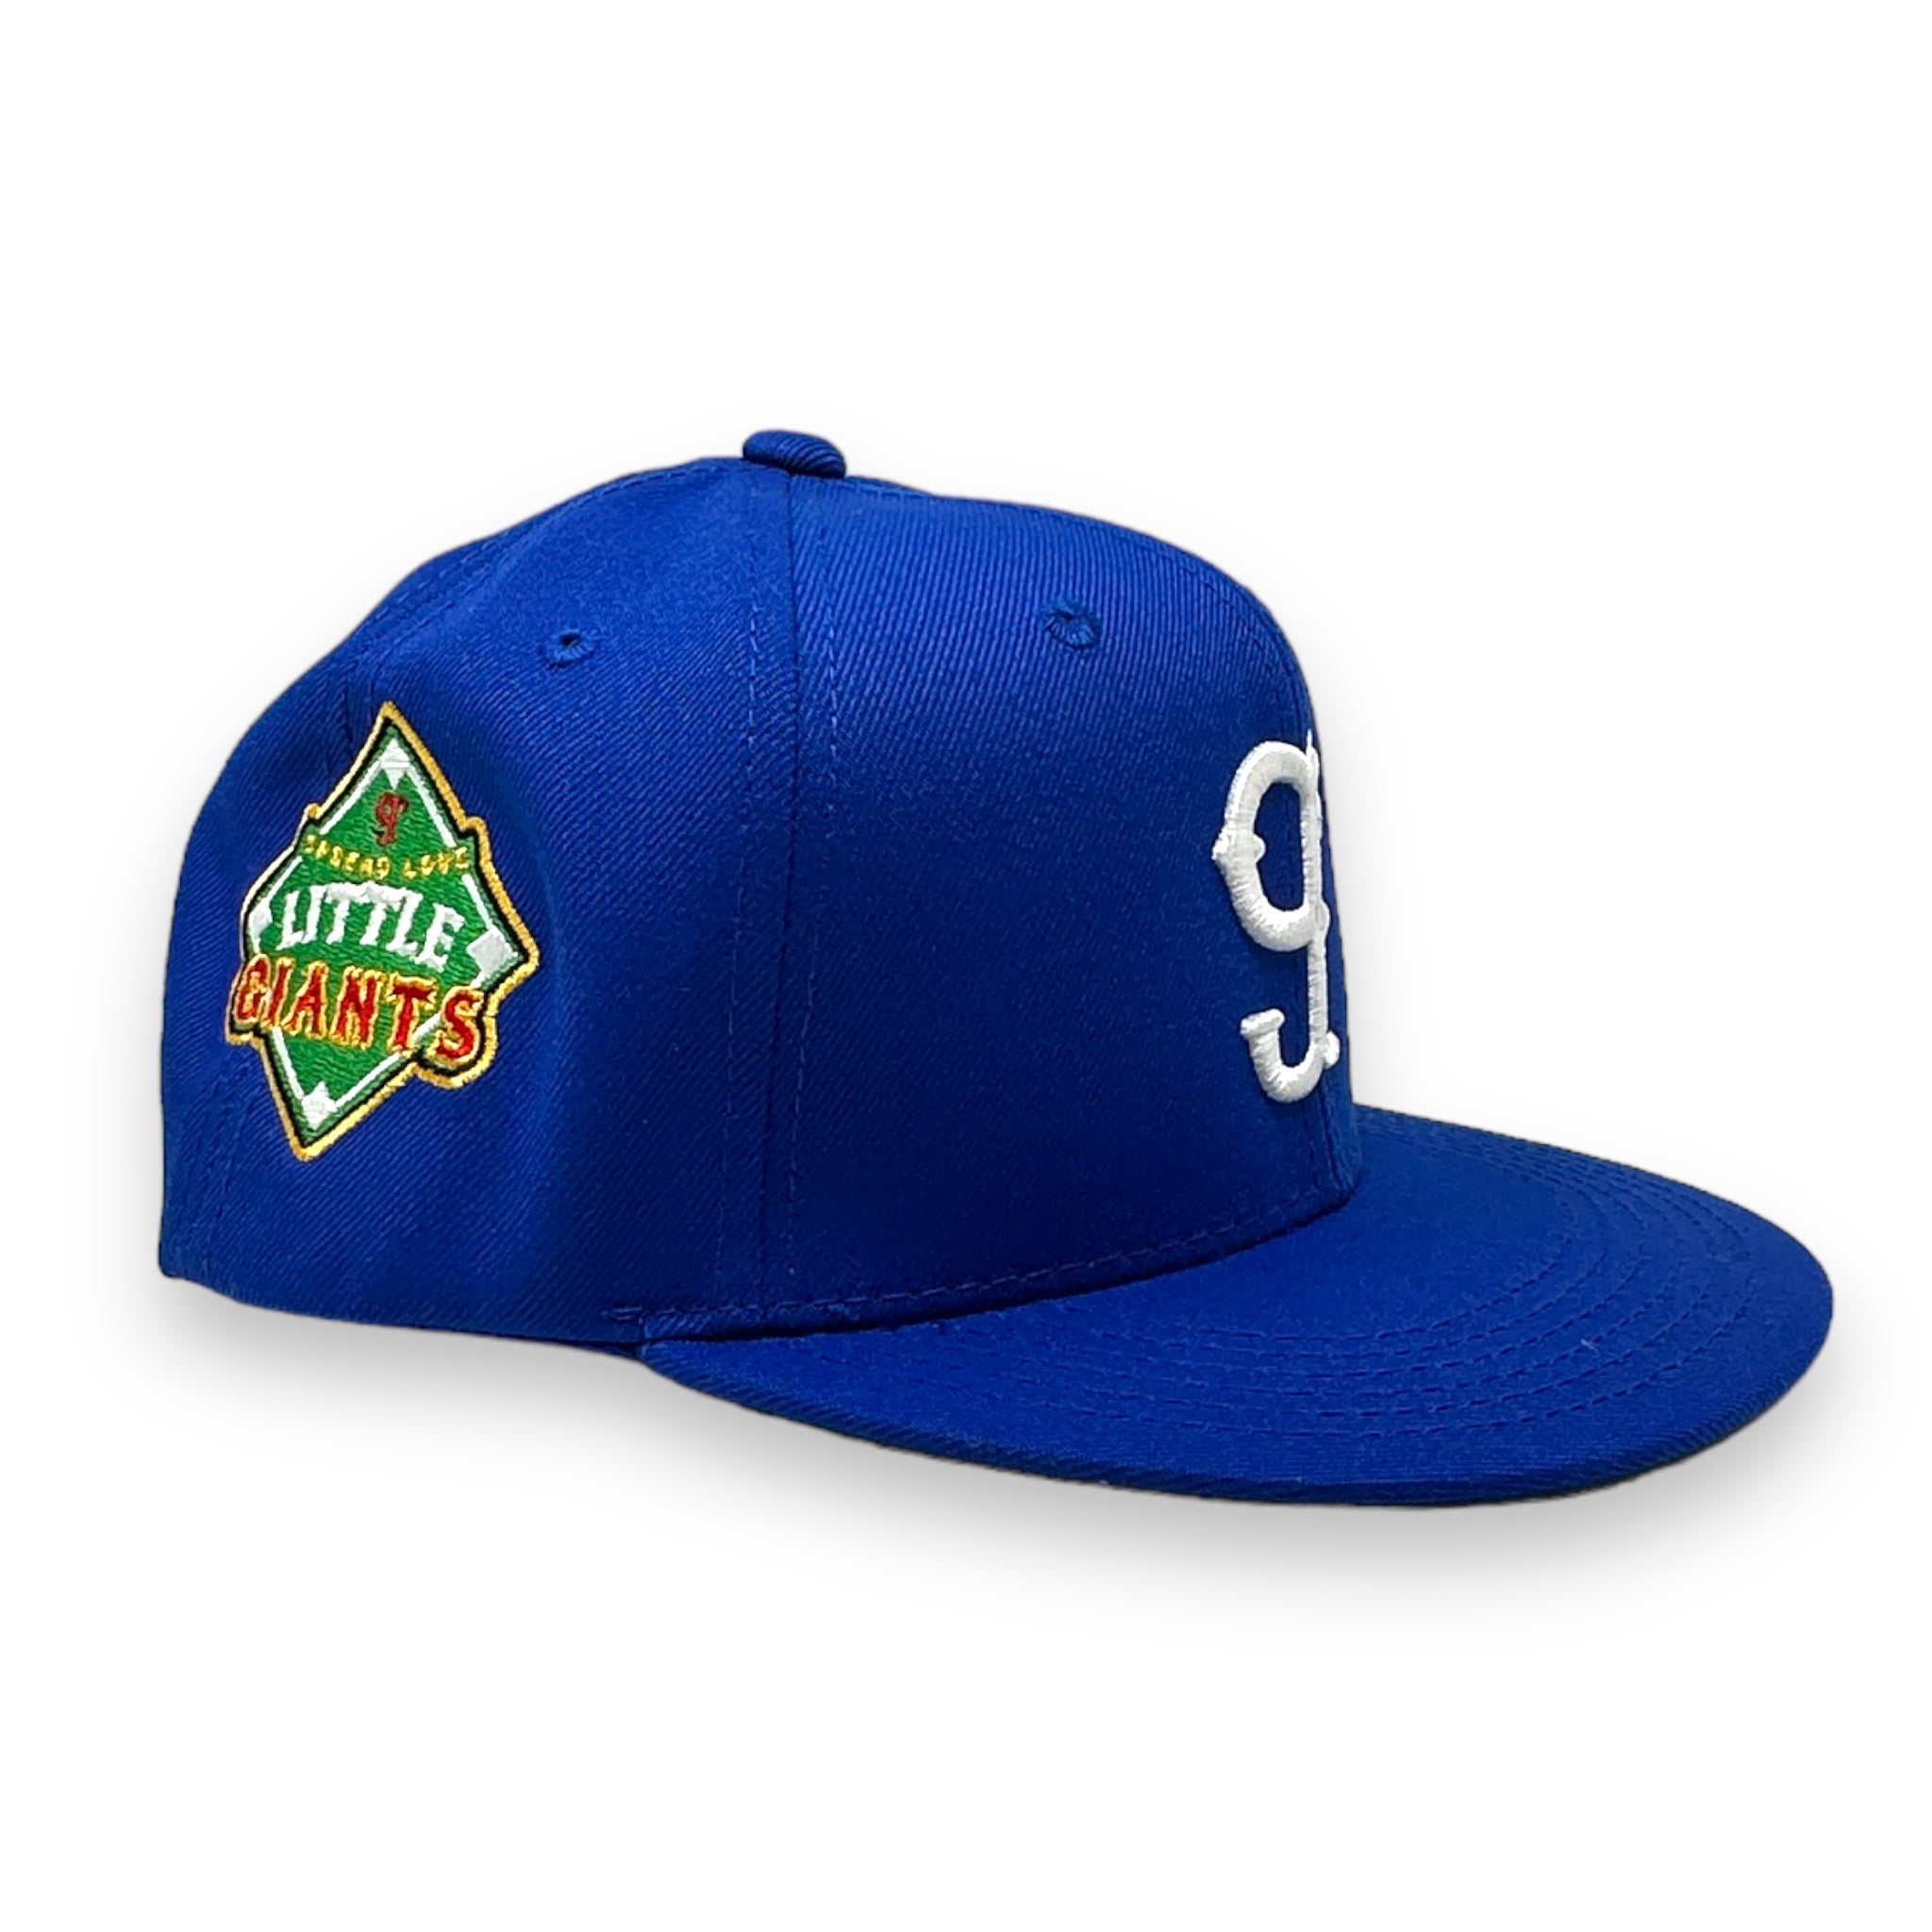 The Little g's Custom Snap Back Hat (Blue)